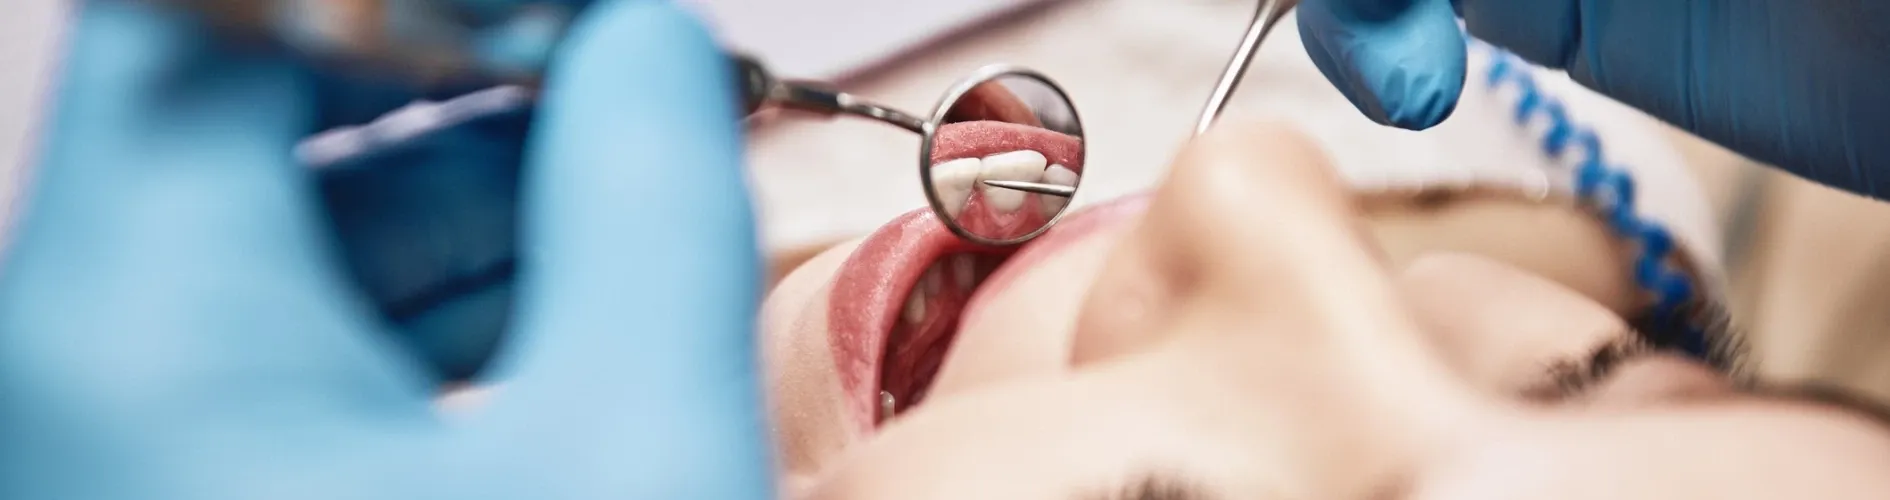 sprawdzanie uzębienia u dentysty lusterkiem